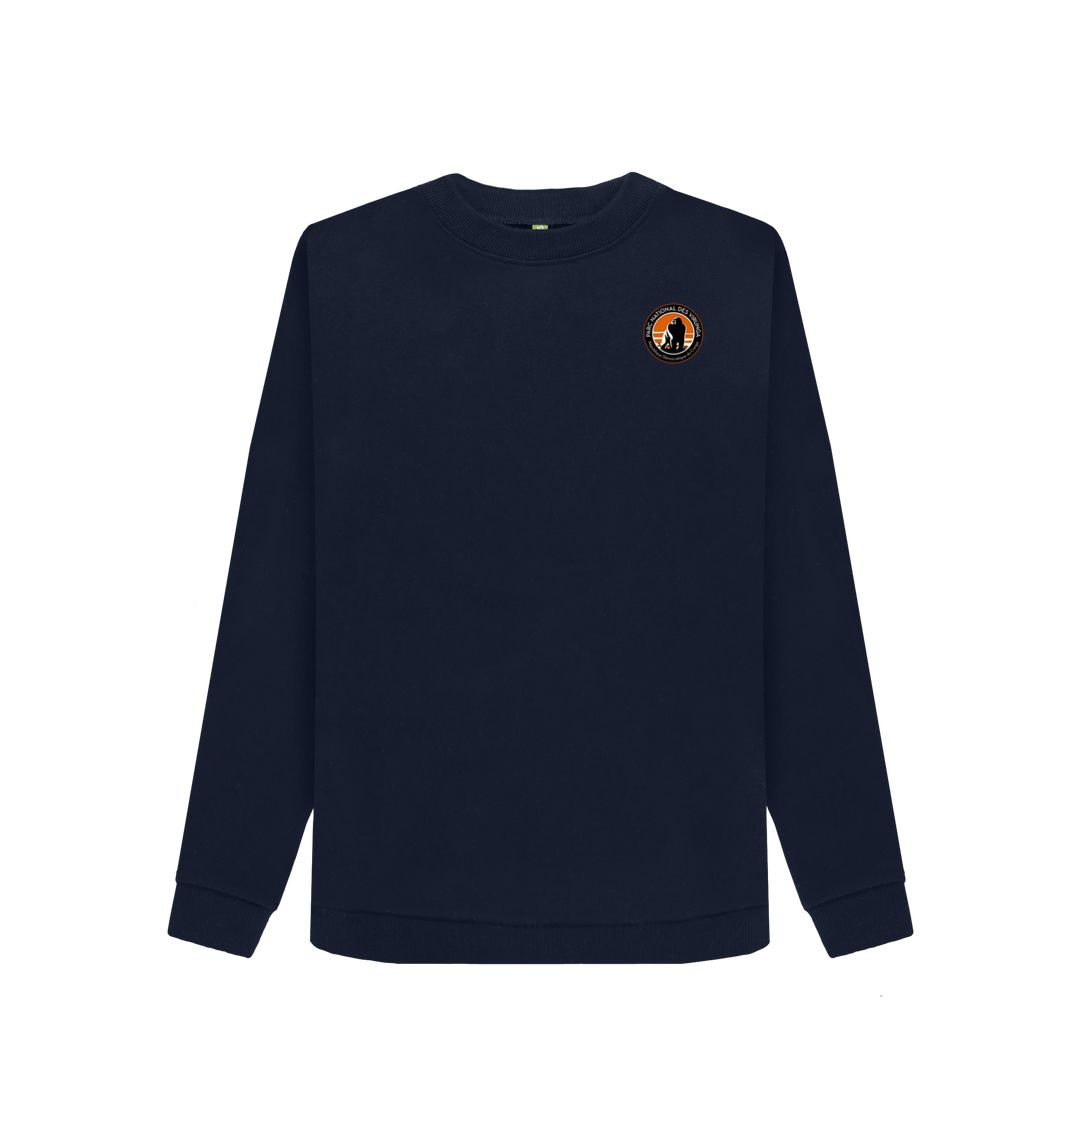 Navy Blue Virunga Pocket Logo Women's Sweater